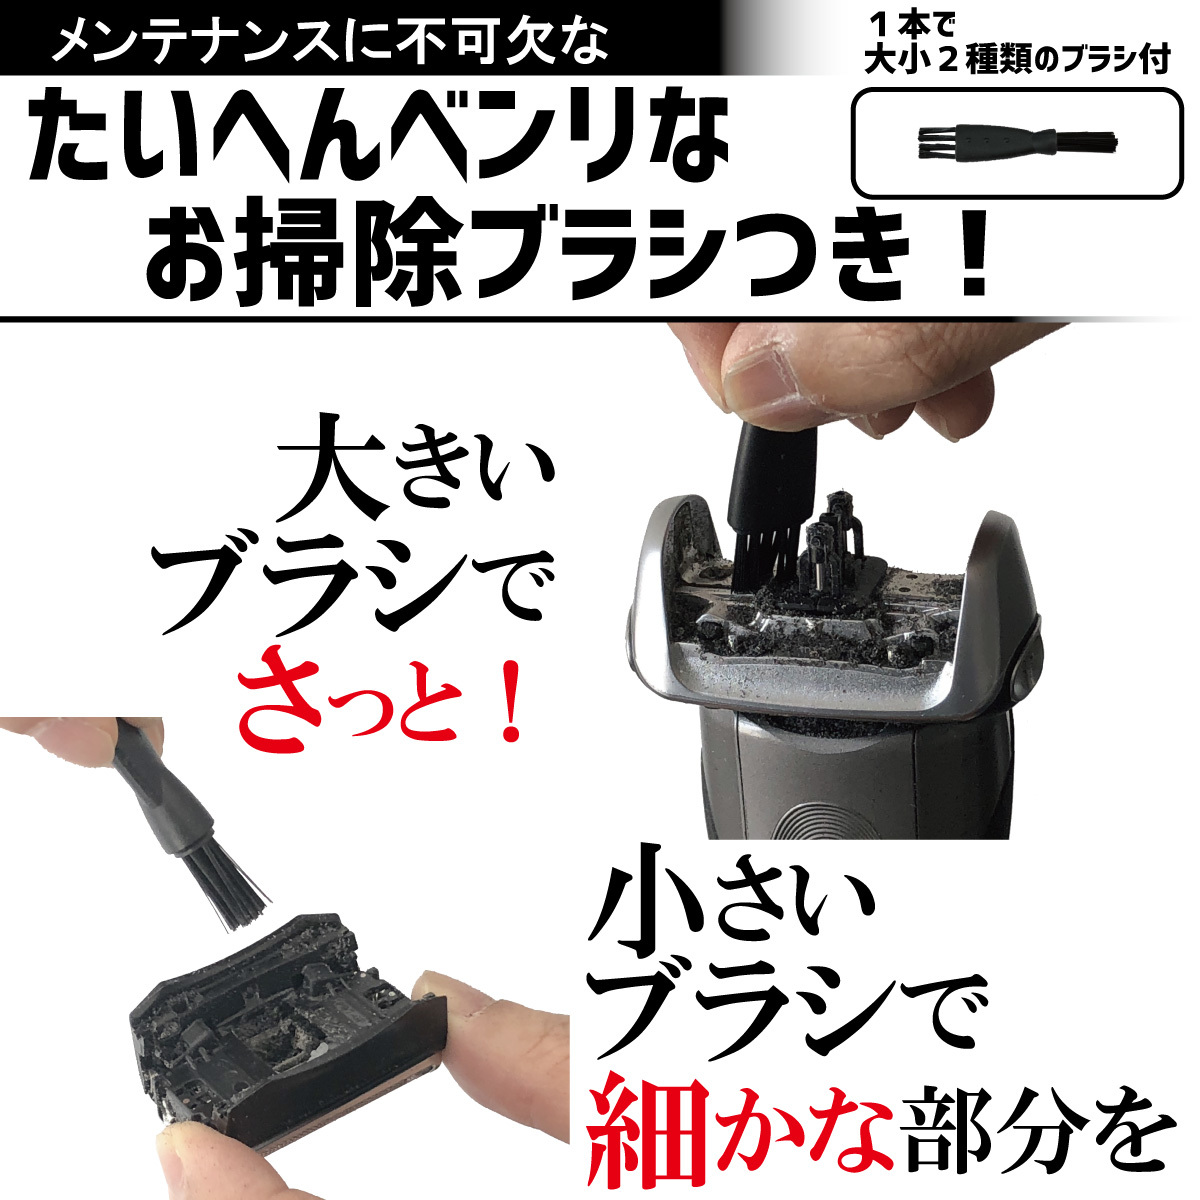  стоимость доставки 198 иен! Brown сменный бритва 31B (F/C31B) комбинированный упаковка ( сеть лезвие + внутри лезвие комплект )BRAUN